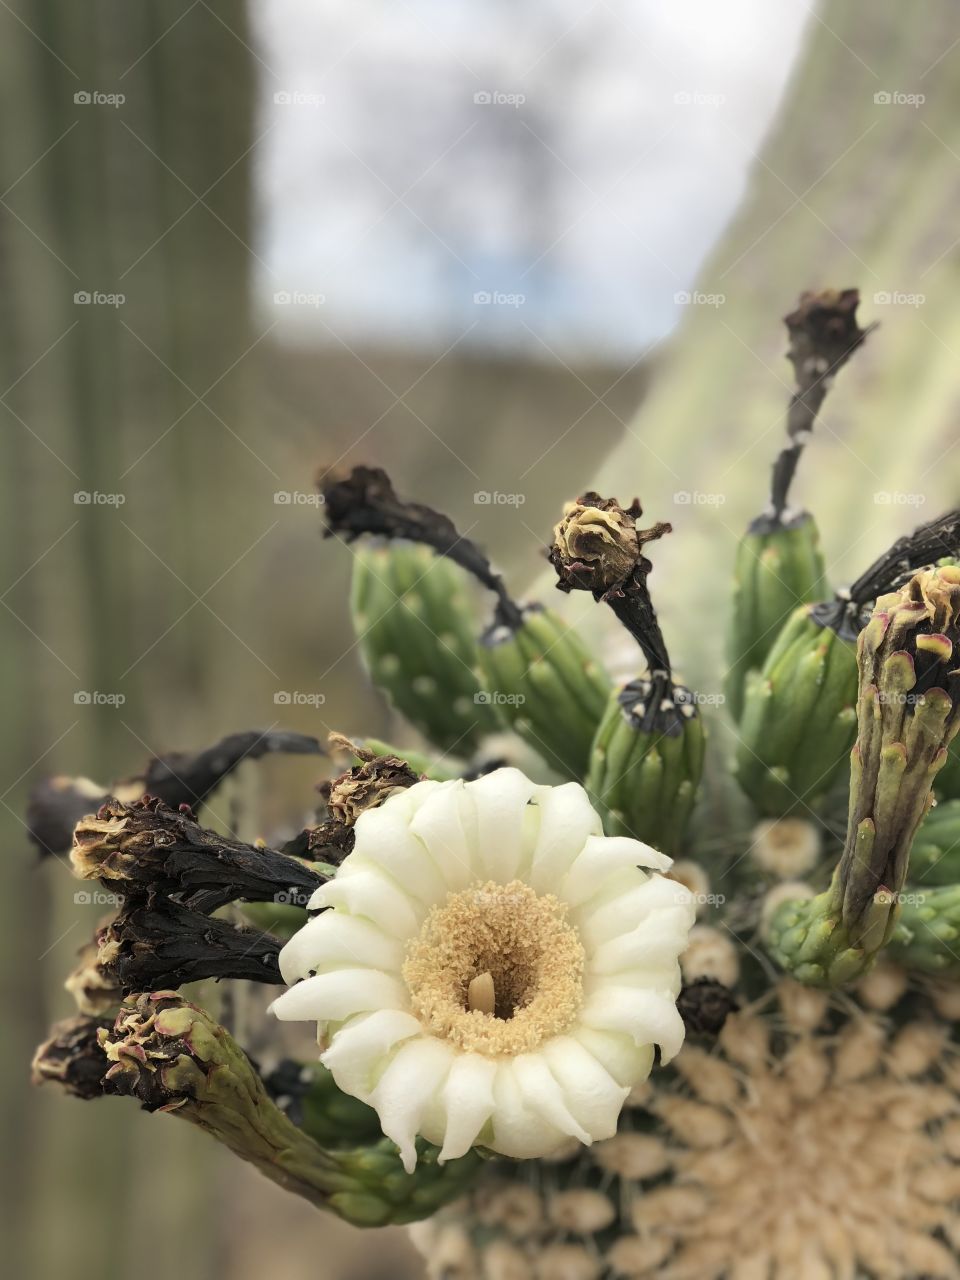 Closeup of a desert saguaro cactus bloom.